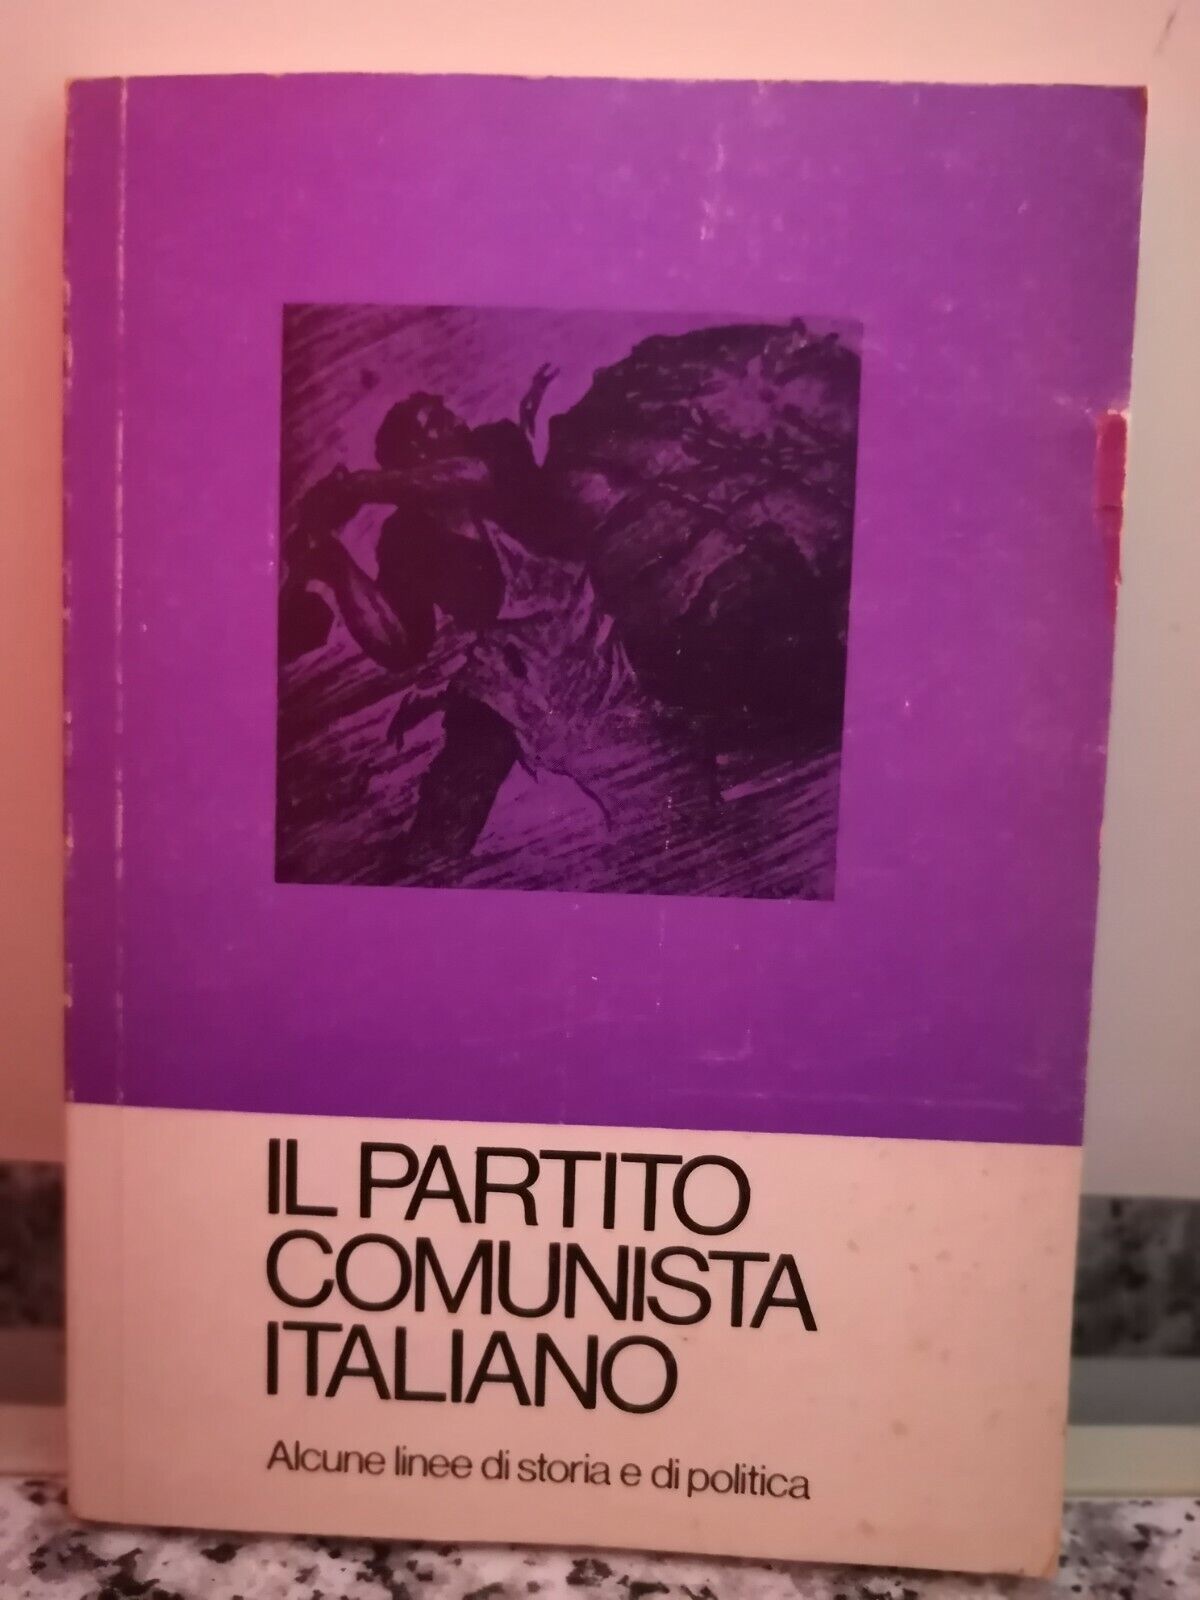  Il partito comunista italiano  di G. d'Al? F. Lazzari,  Fll. Spada-F